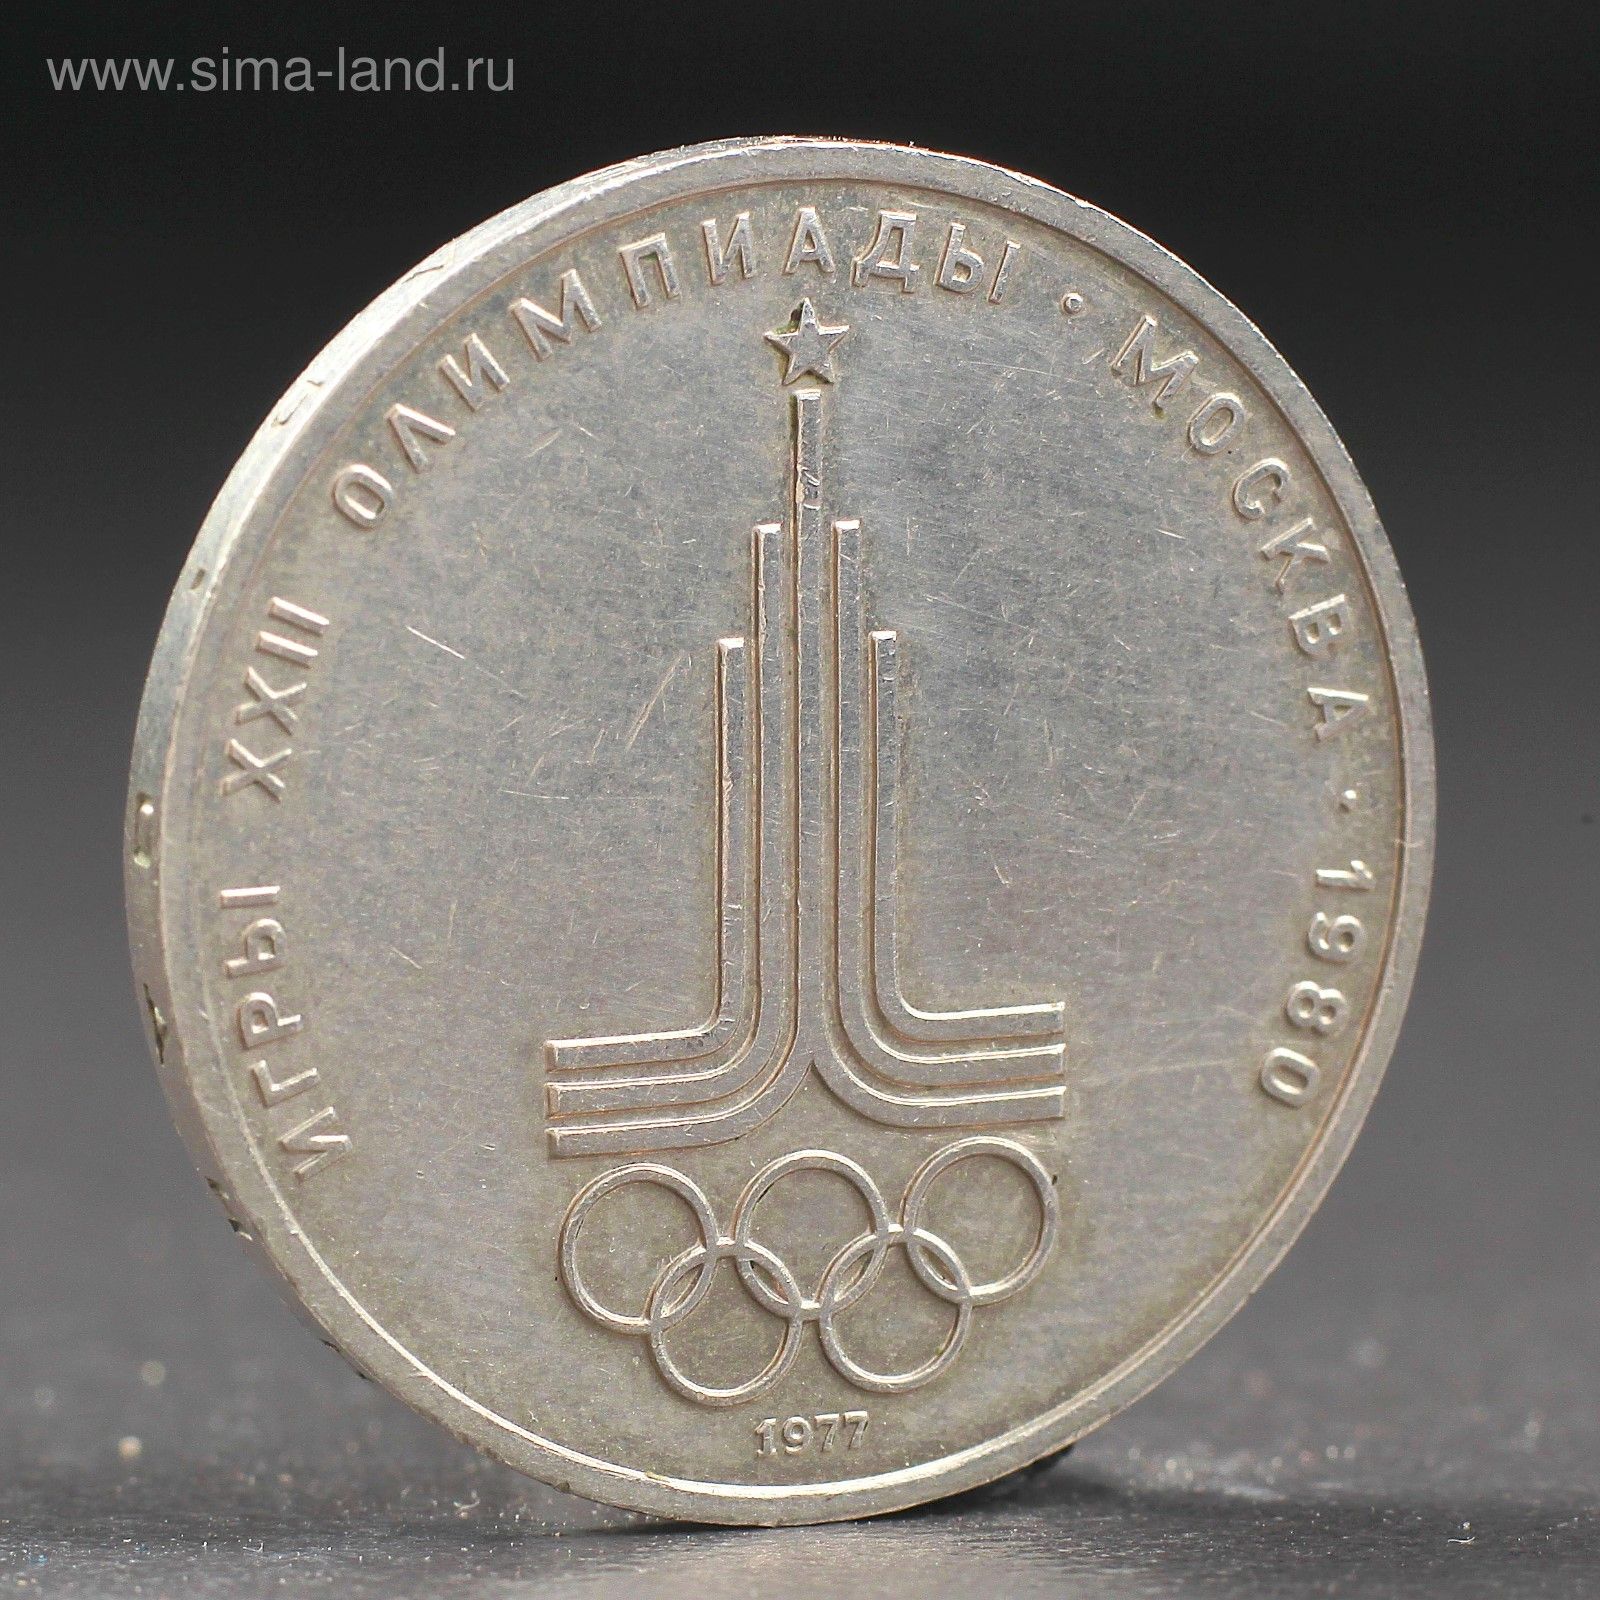 80 рублей россии. Монета СССР 1 рубль 1980 года Олимпийский. Монета 1 рубль 1977 года. Олимпийский рубль 1977.